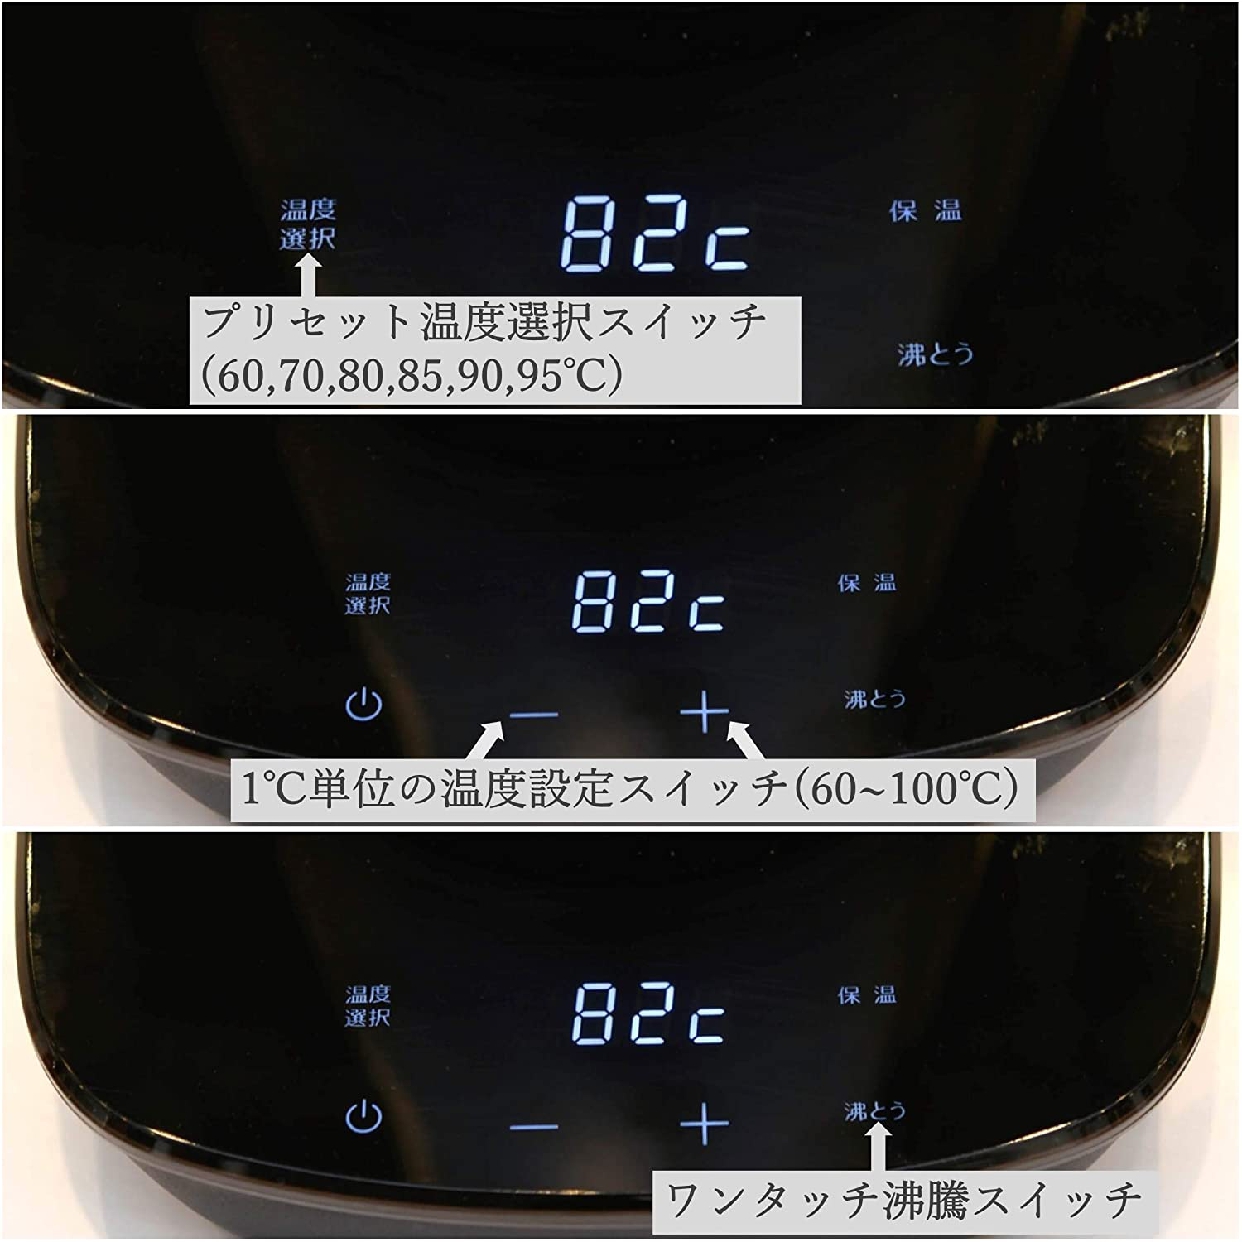 山善(YAMAZEN) 電気ケトル YKG-C800の商品画像サムネ3 